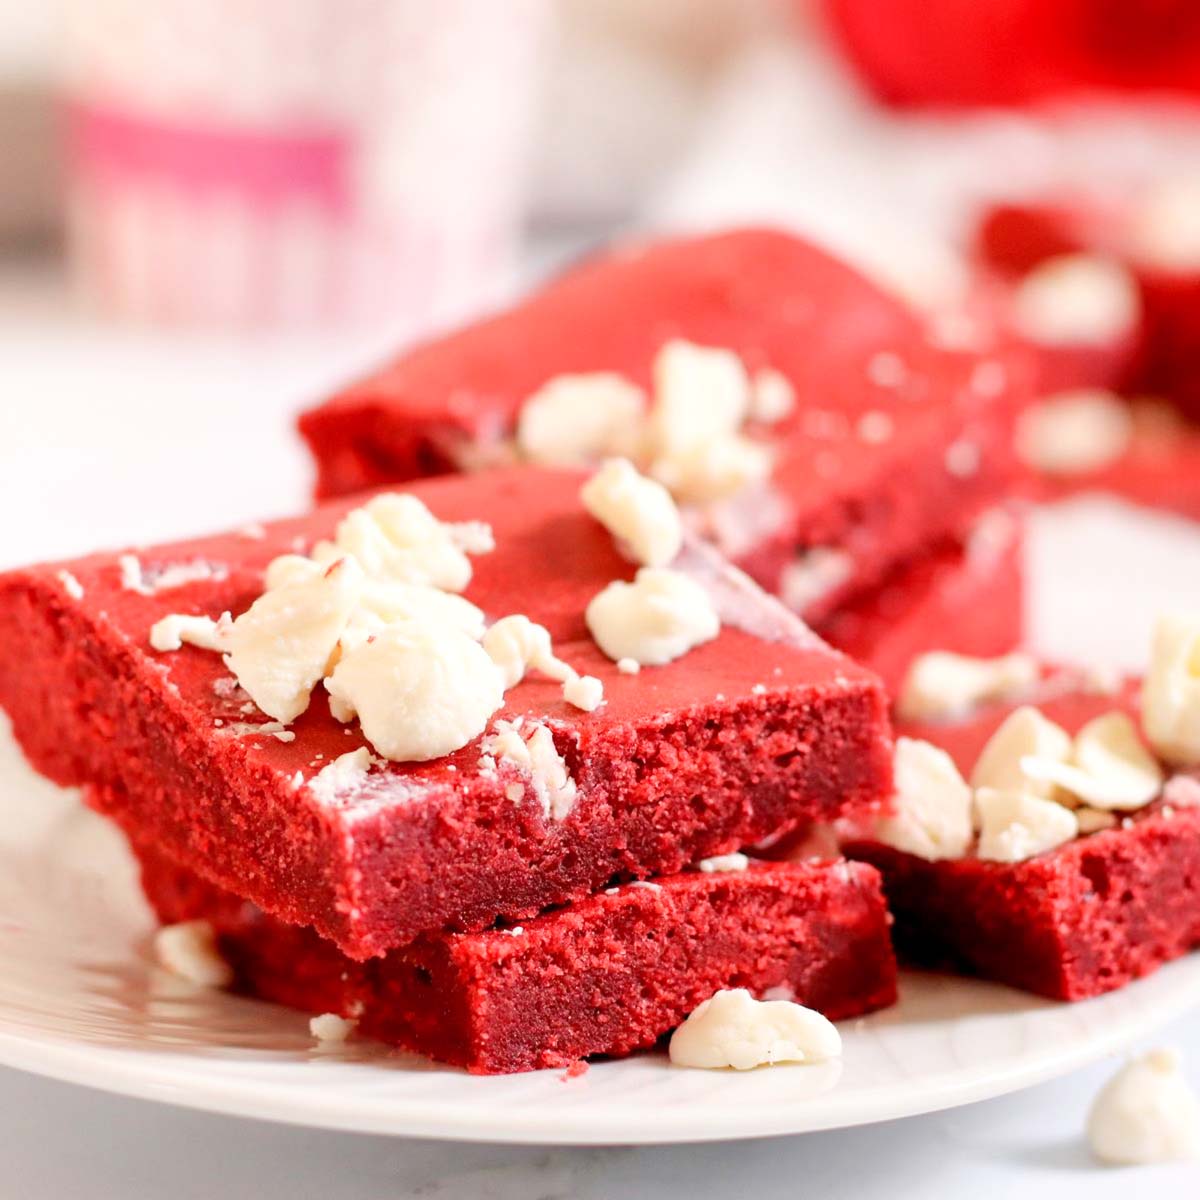 Thumbnail of red velvet cookie bars using cake mix.